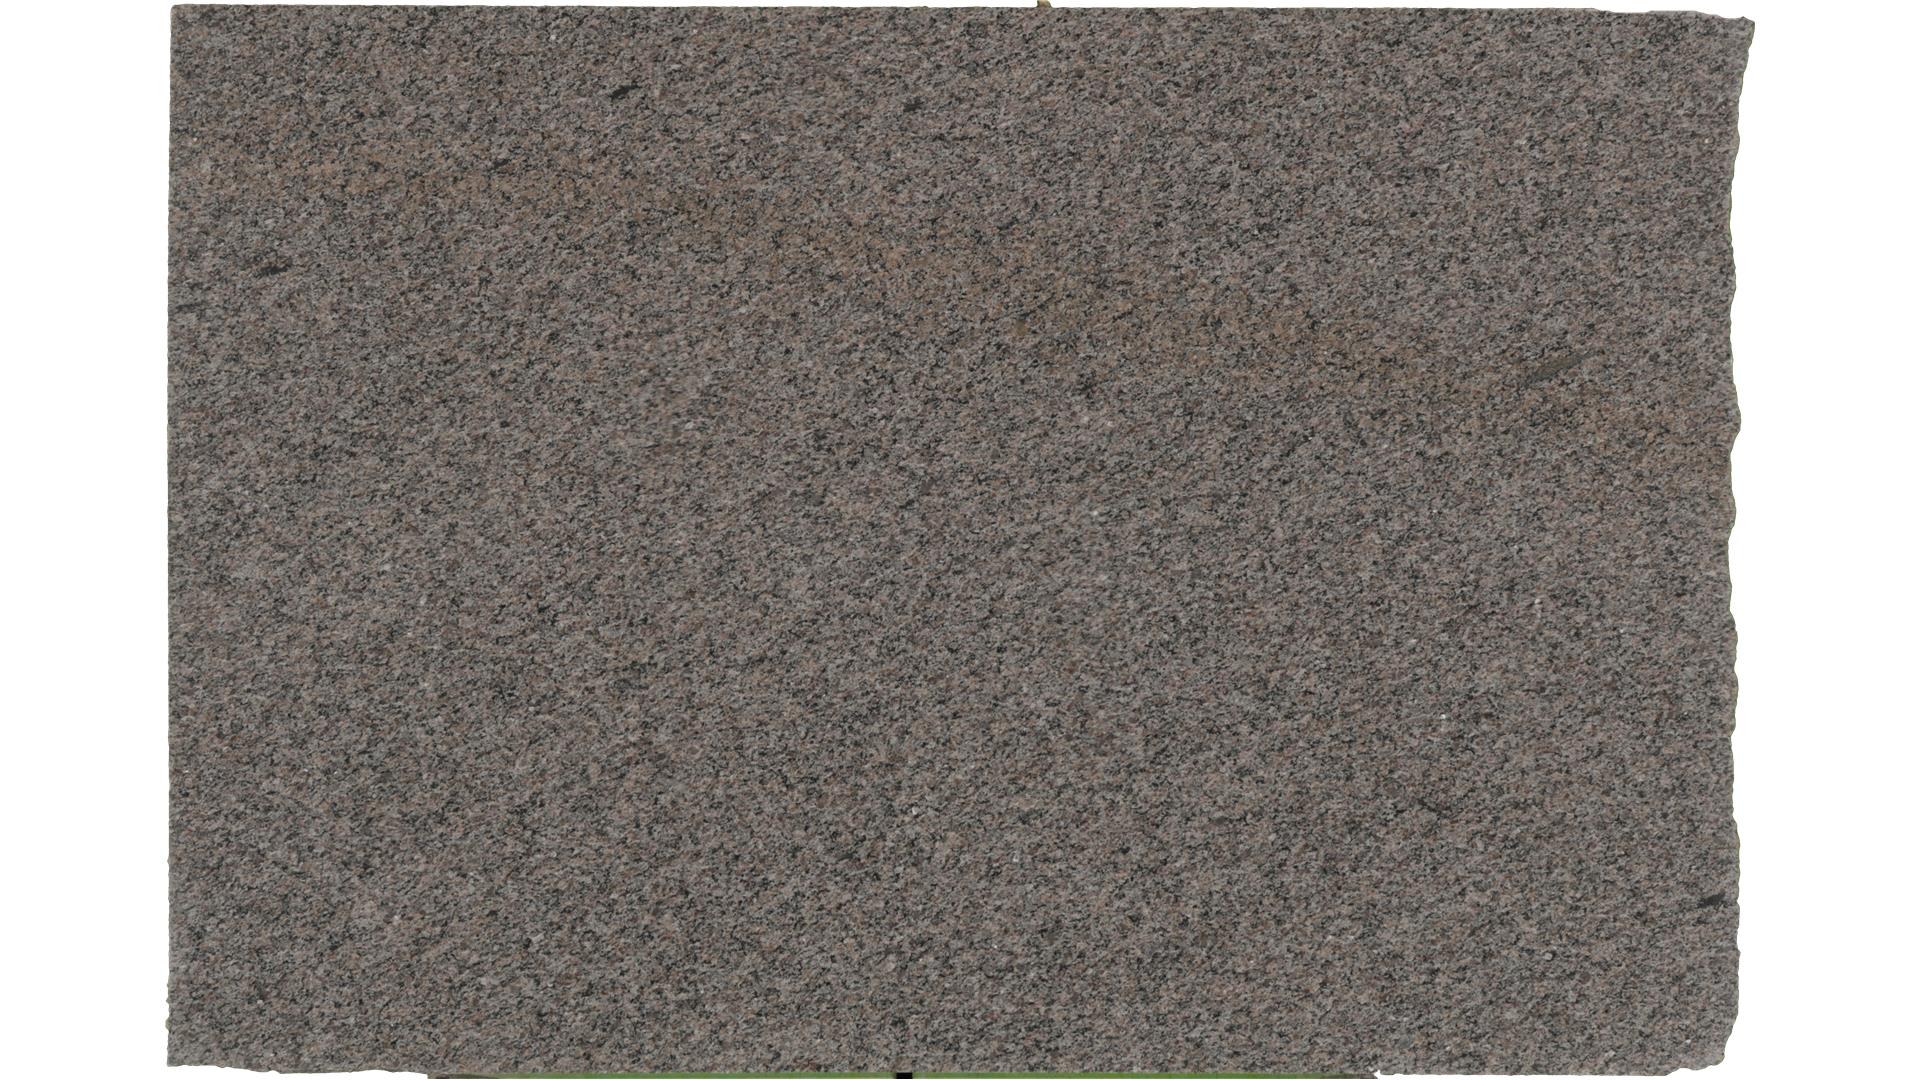 Caledonia Granite Slabs